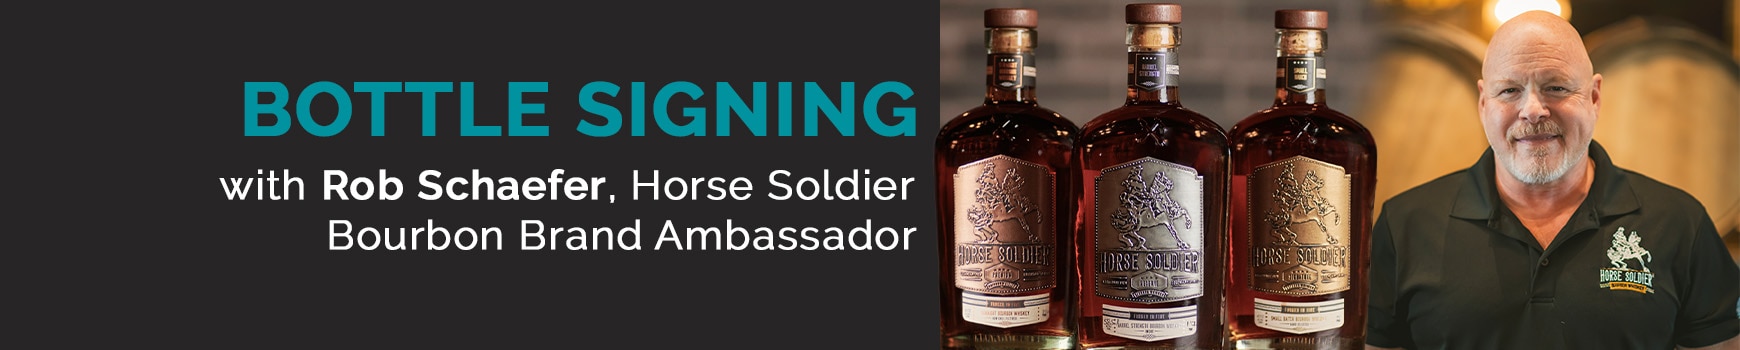 Bottle Signing with Rob Schaefer, Horse Soldier Bourbon Brand Ambassador.